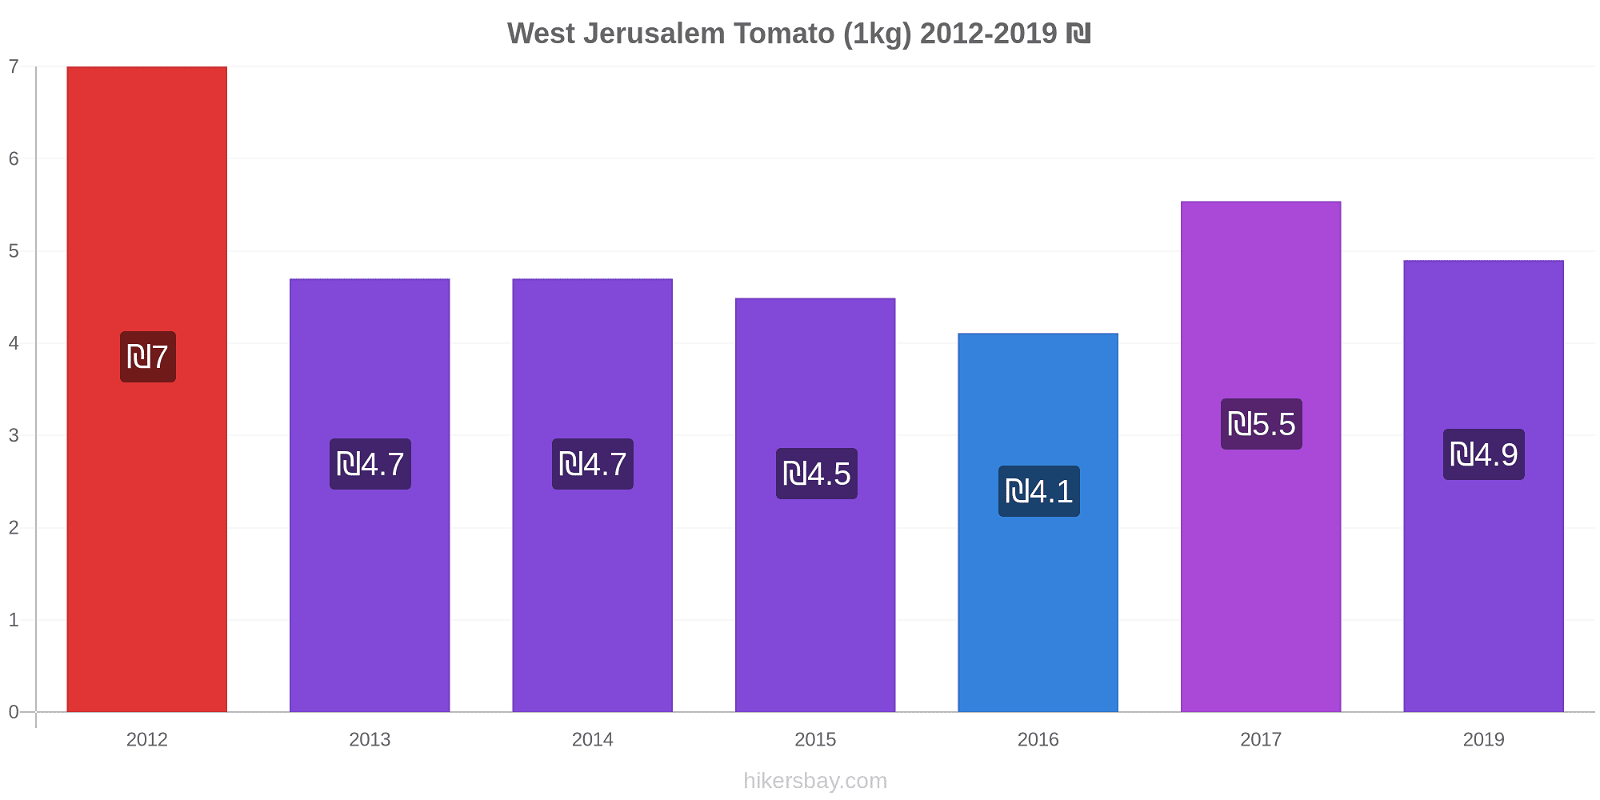 West Jerusalem price changes Tomato (1kg) hikersbay.com